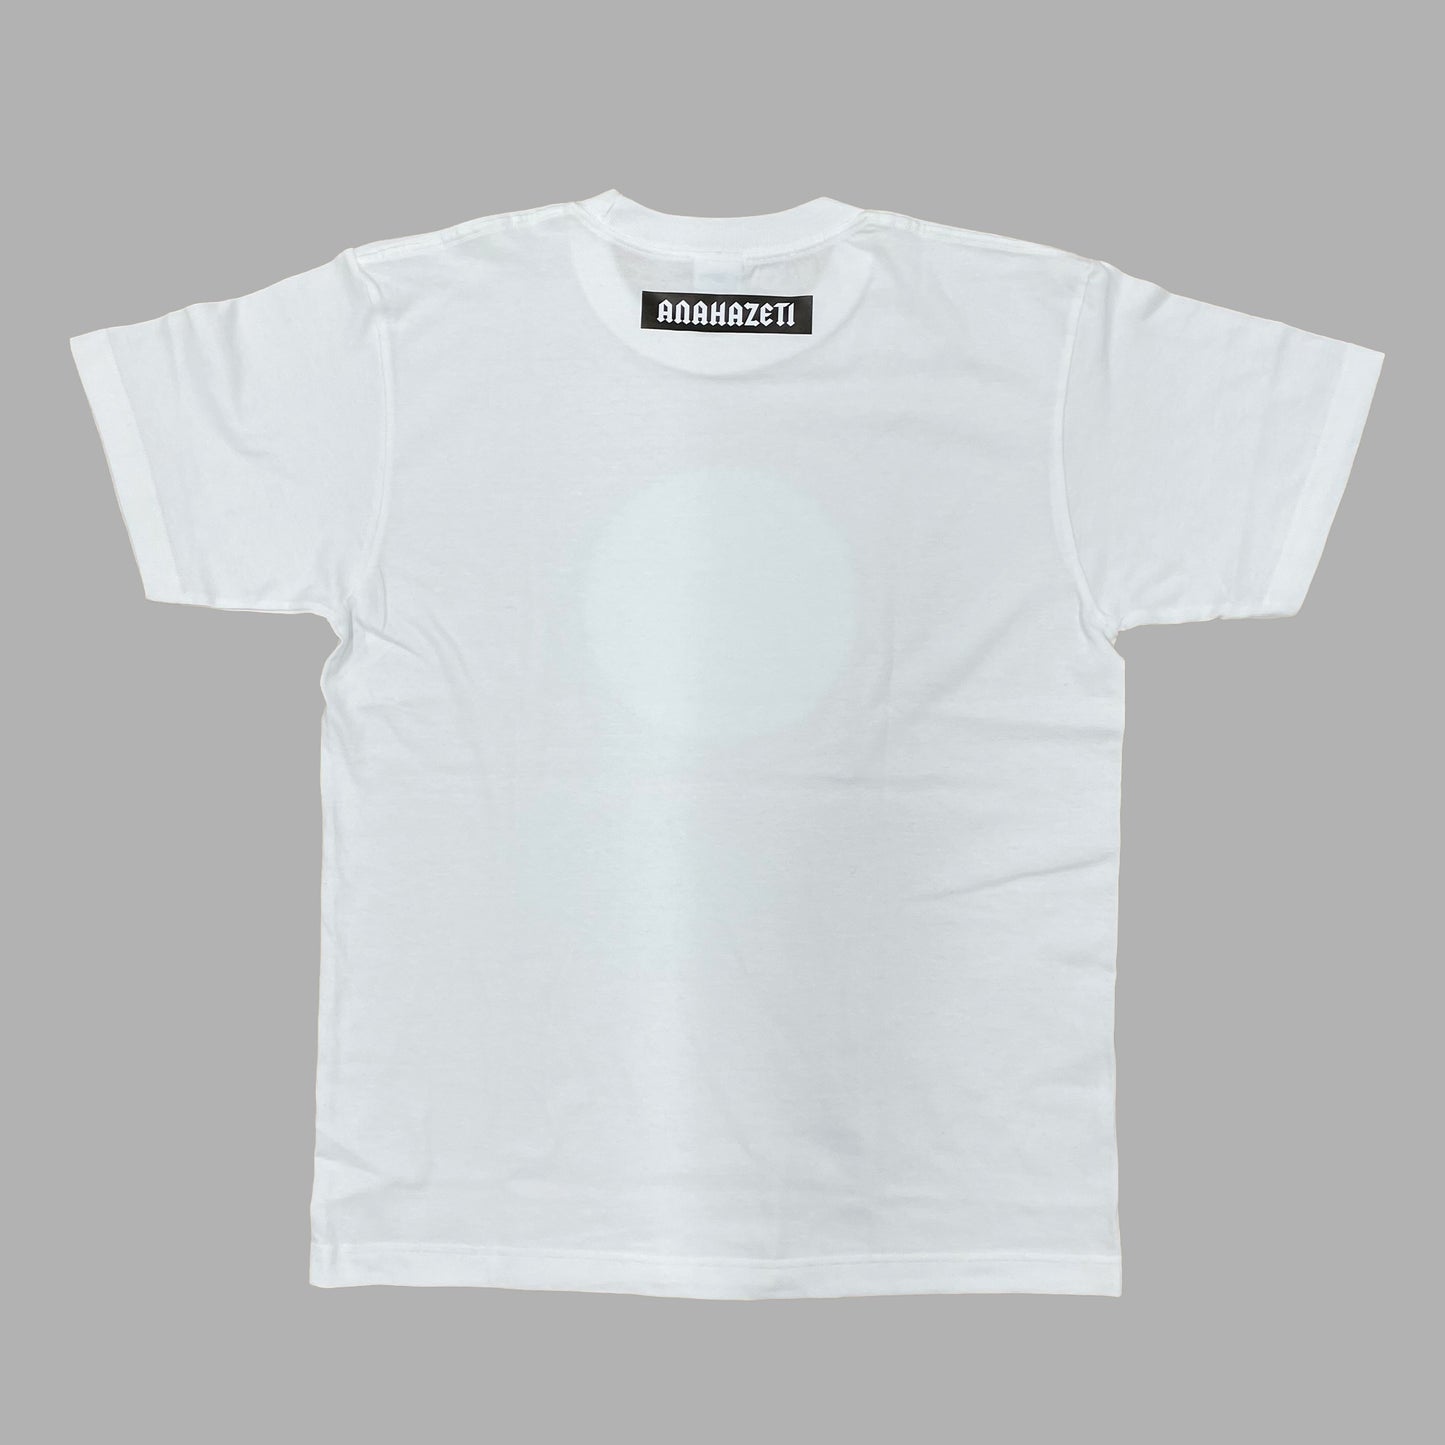 アナハゼティロゴTシャツ(半袖) ホワイト